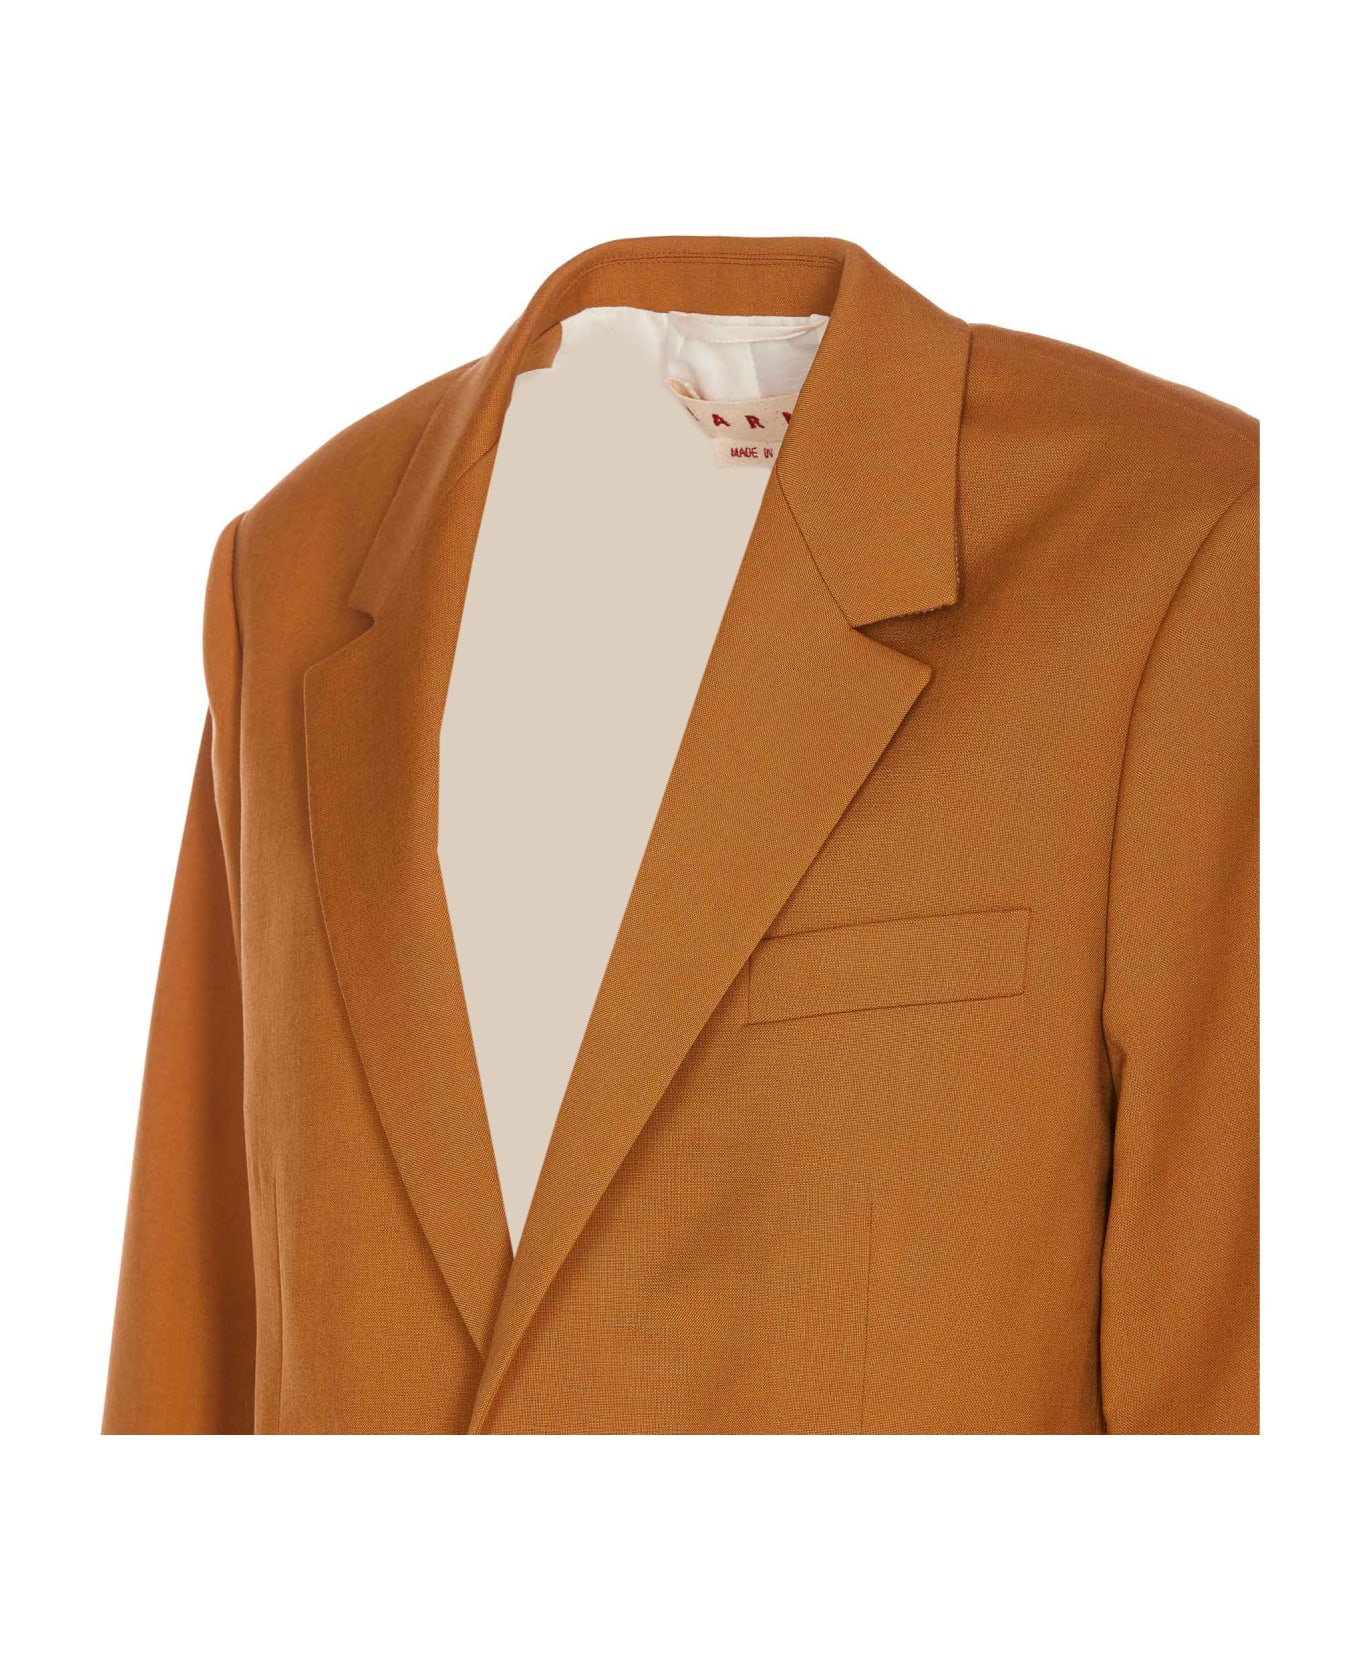 Marni Jacket - Orange